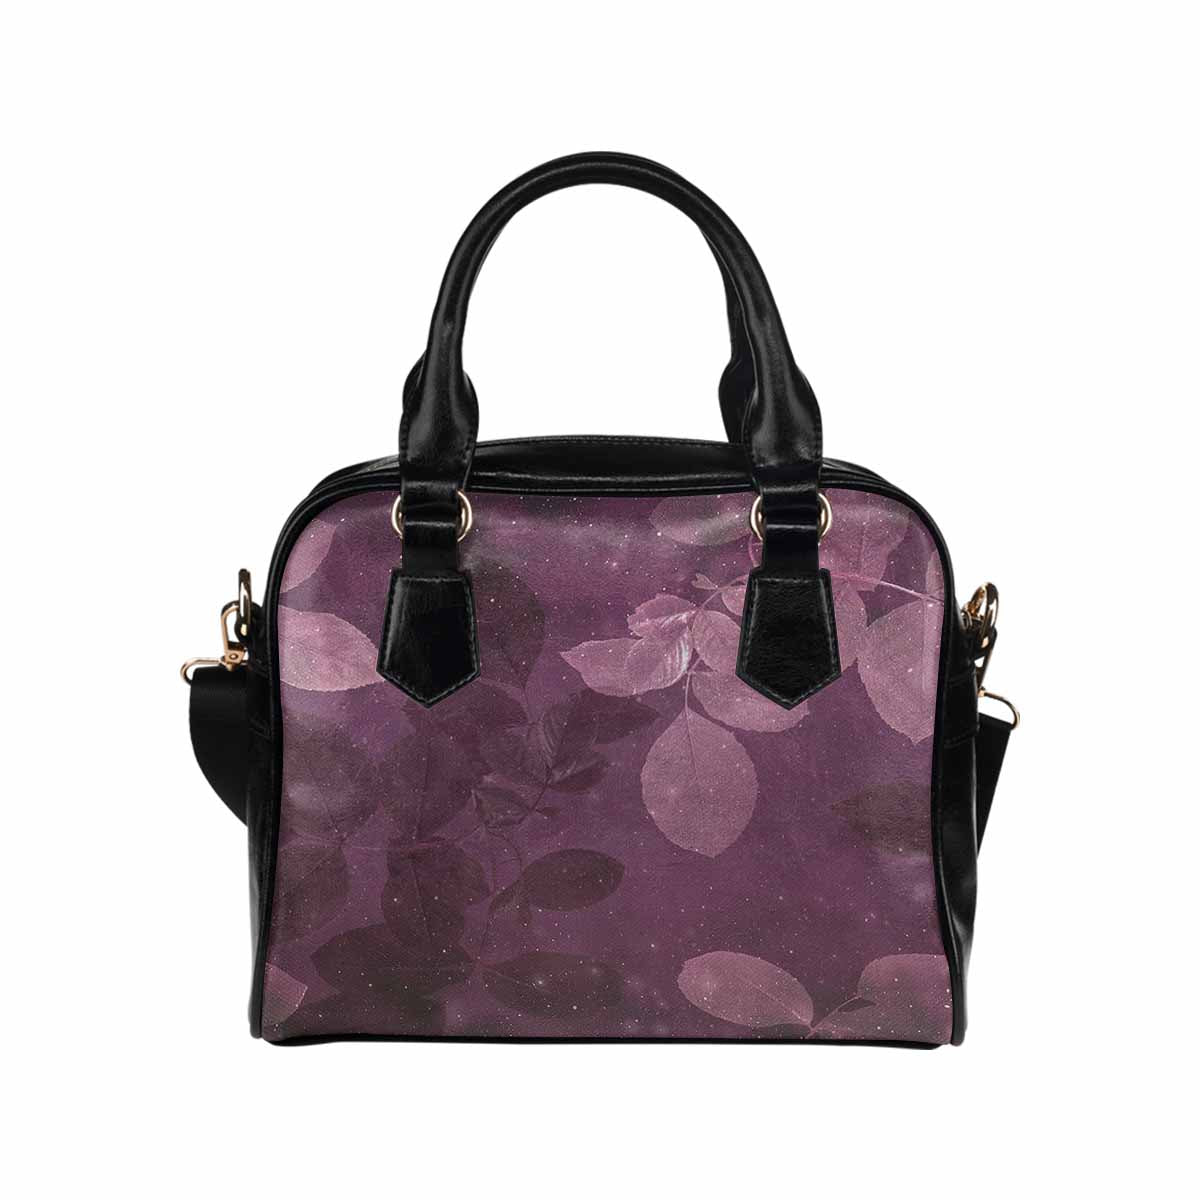 Antique general print handbag, MODEL1695341,Design 54